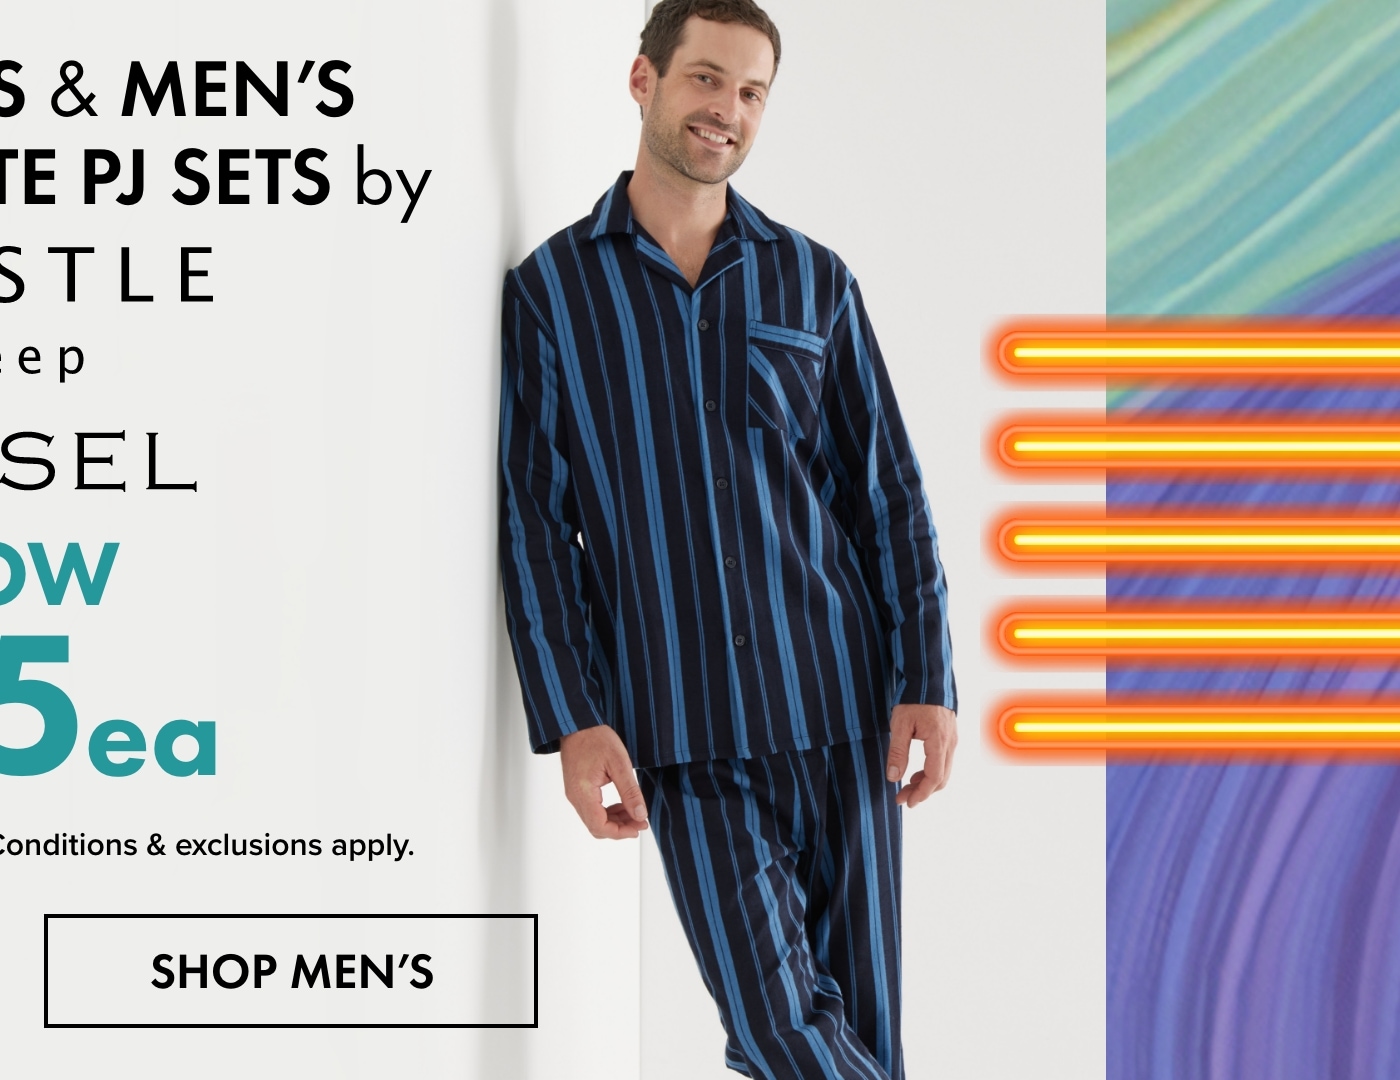 $35ea Women's & Men's Flannelette PJ Sets by Whistle Sleep & Chisel